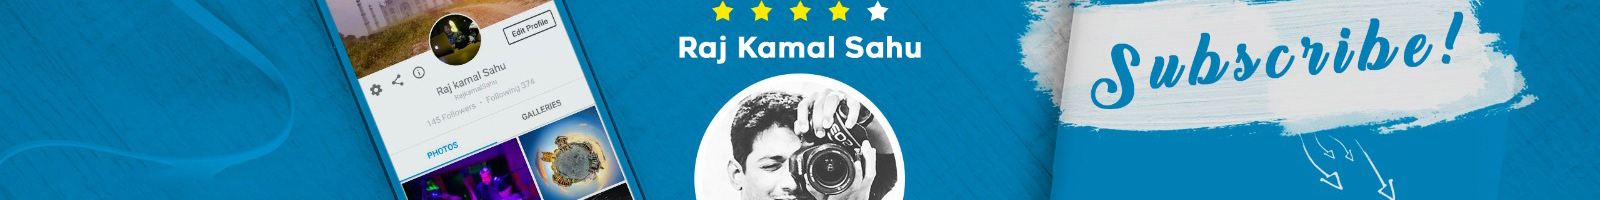 Profil-Banner von Raj Kamal Sahu